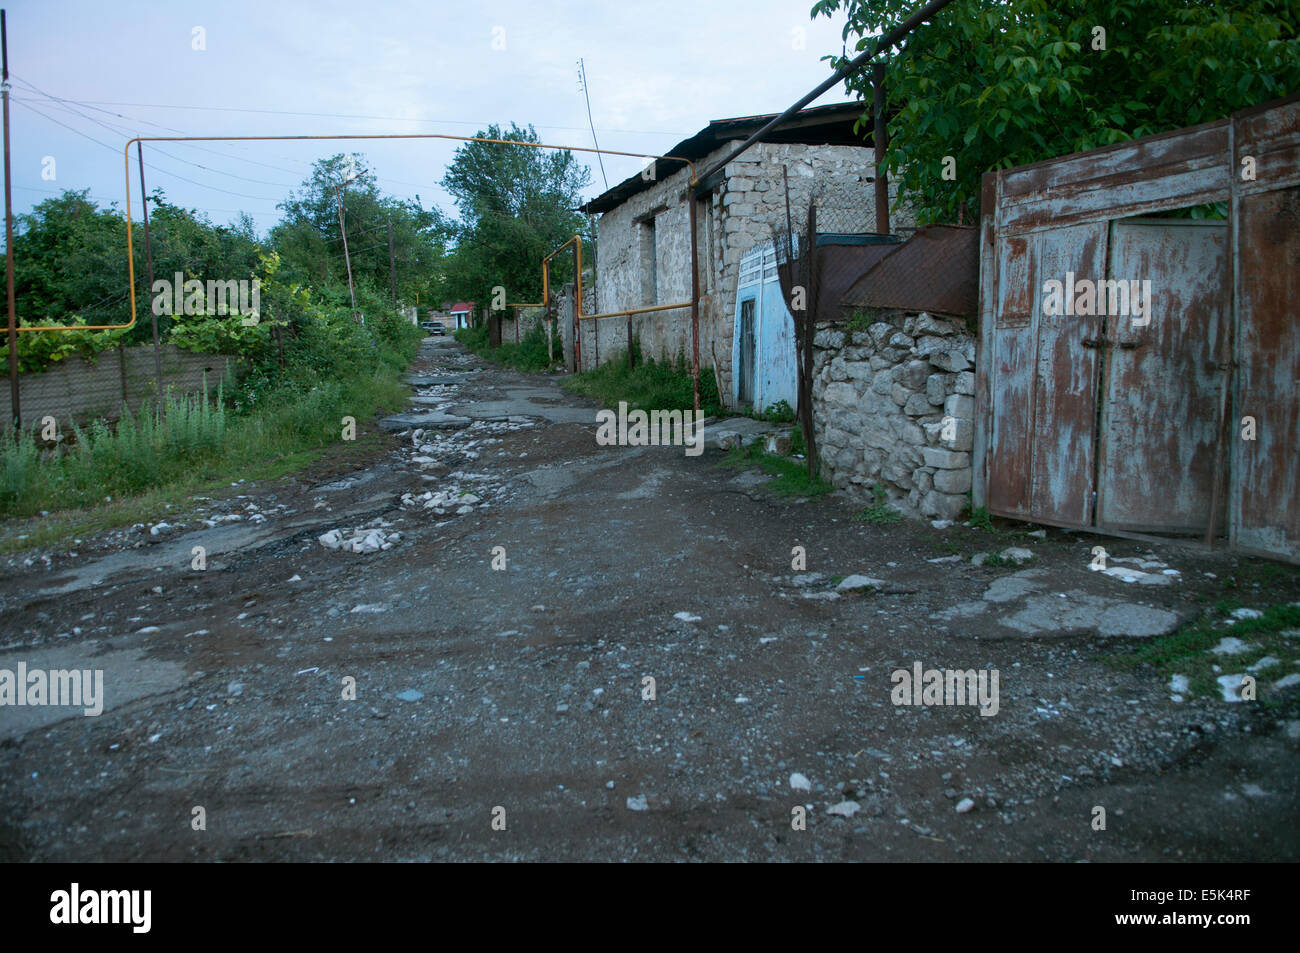 Street of Shushi (Shusha), unrecognized state of Nagorno-Karabakh Stock Photo